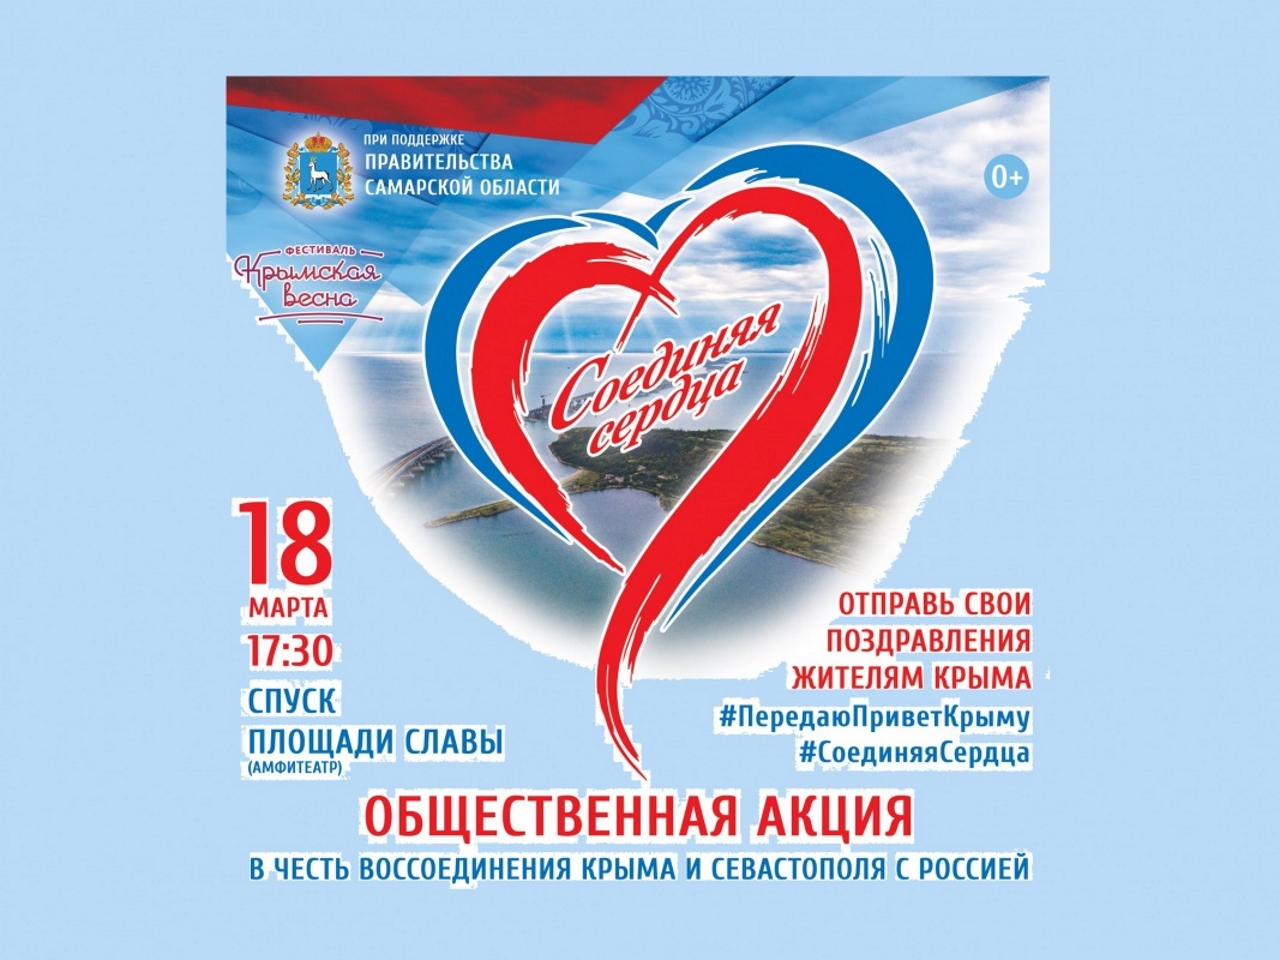 «Соединяя сердца!» - 5 лет Россия и Крым вместе!